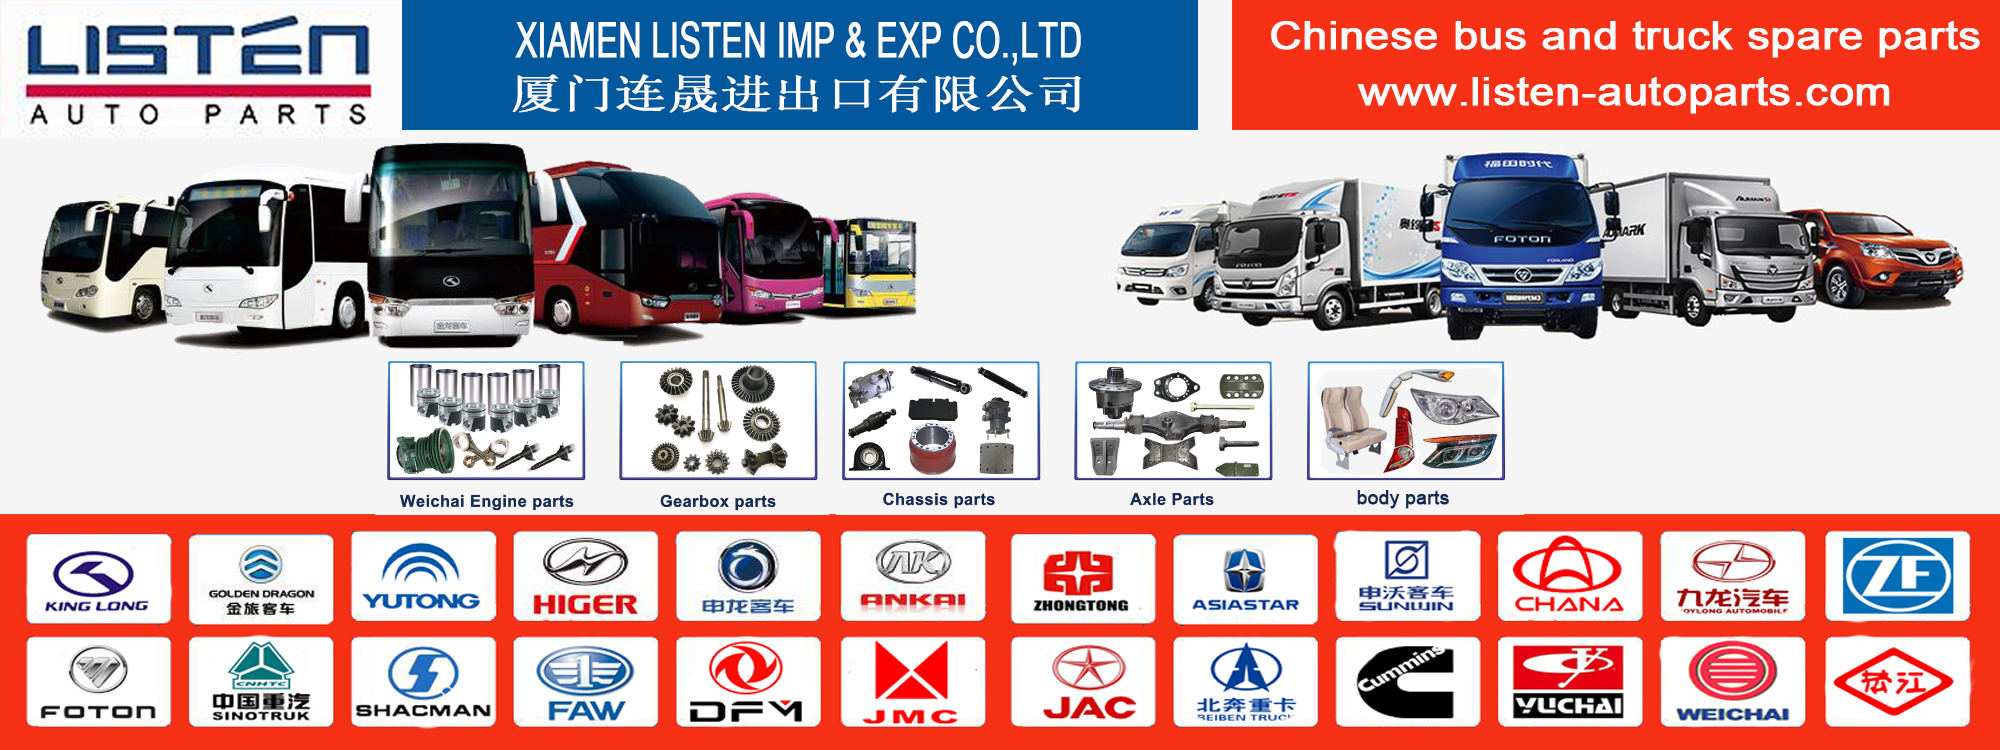 Xiamen Dengarkan Imp & Exp Co, Ltd